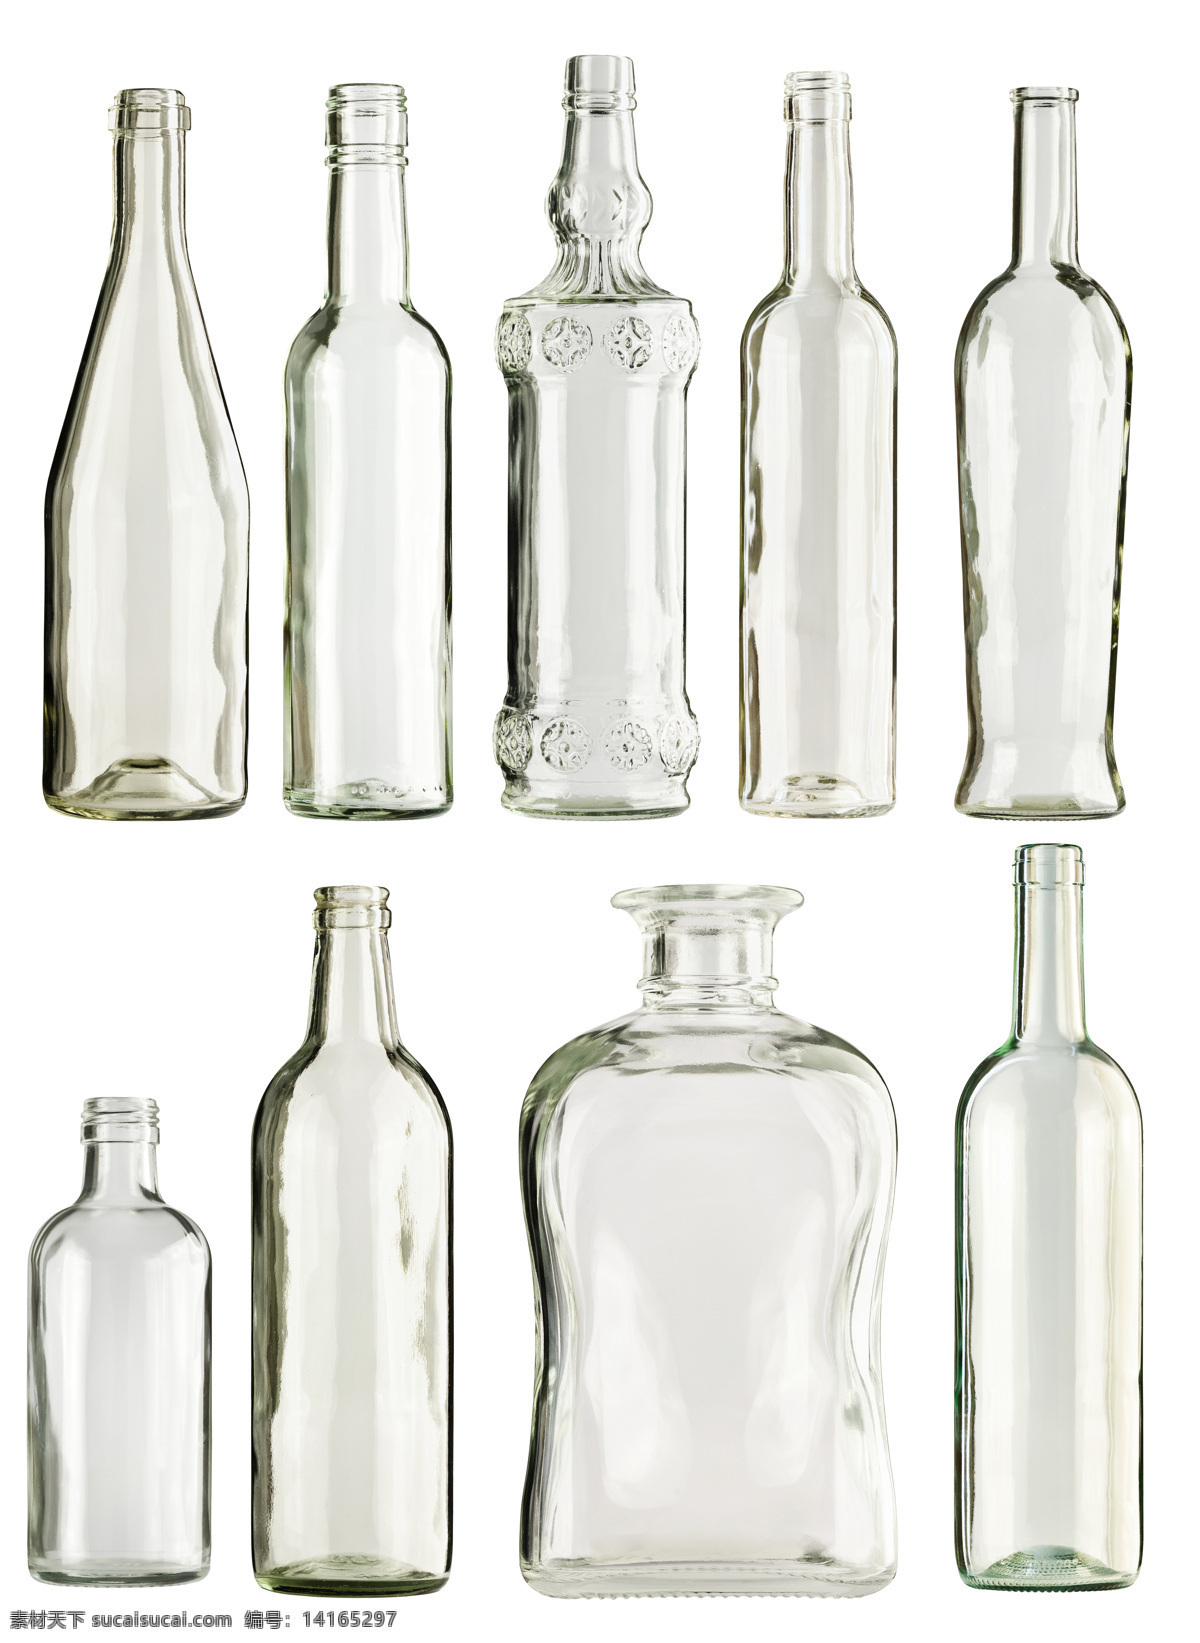 不同 形状 瓶子 不同形状 水 矿泉水 饮料 冰水烈火 生活百科 白色